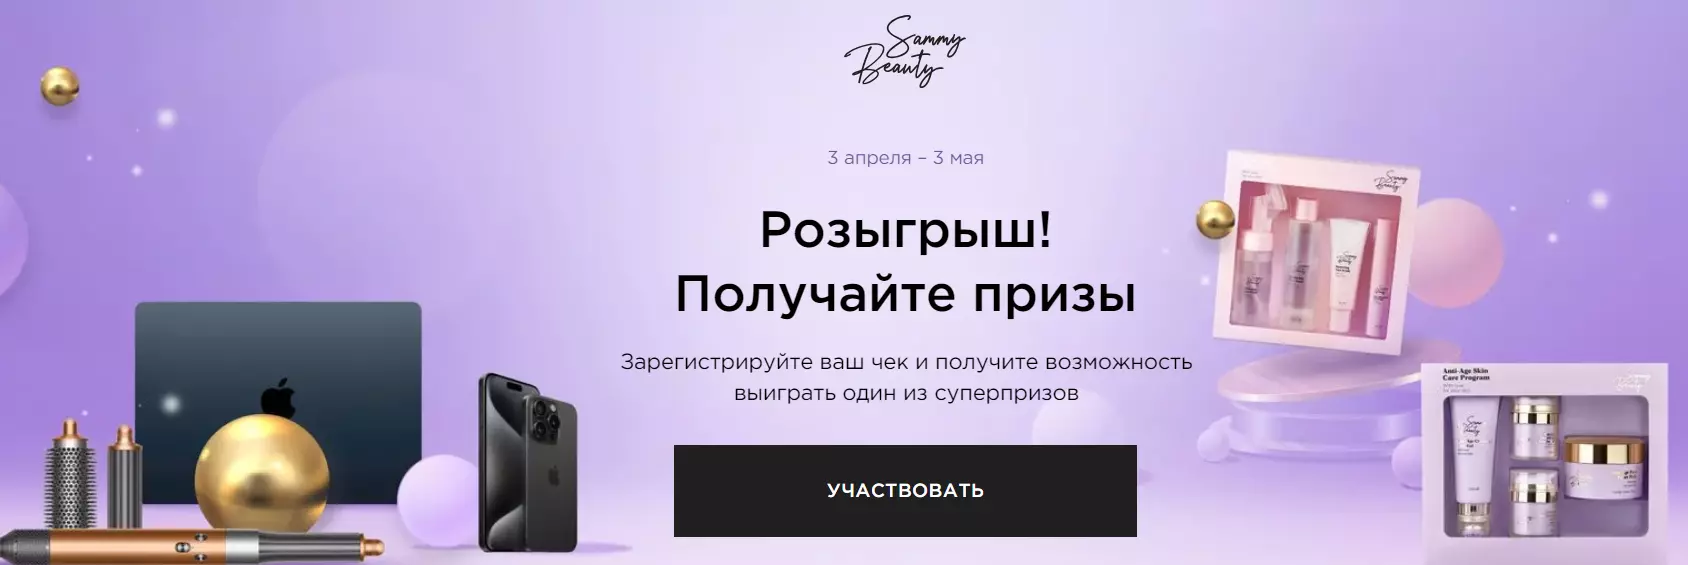 Акция Sammy Beauty и Ozon.ru: «Pop-up Sammy Beauty Spring»